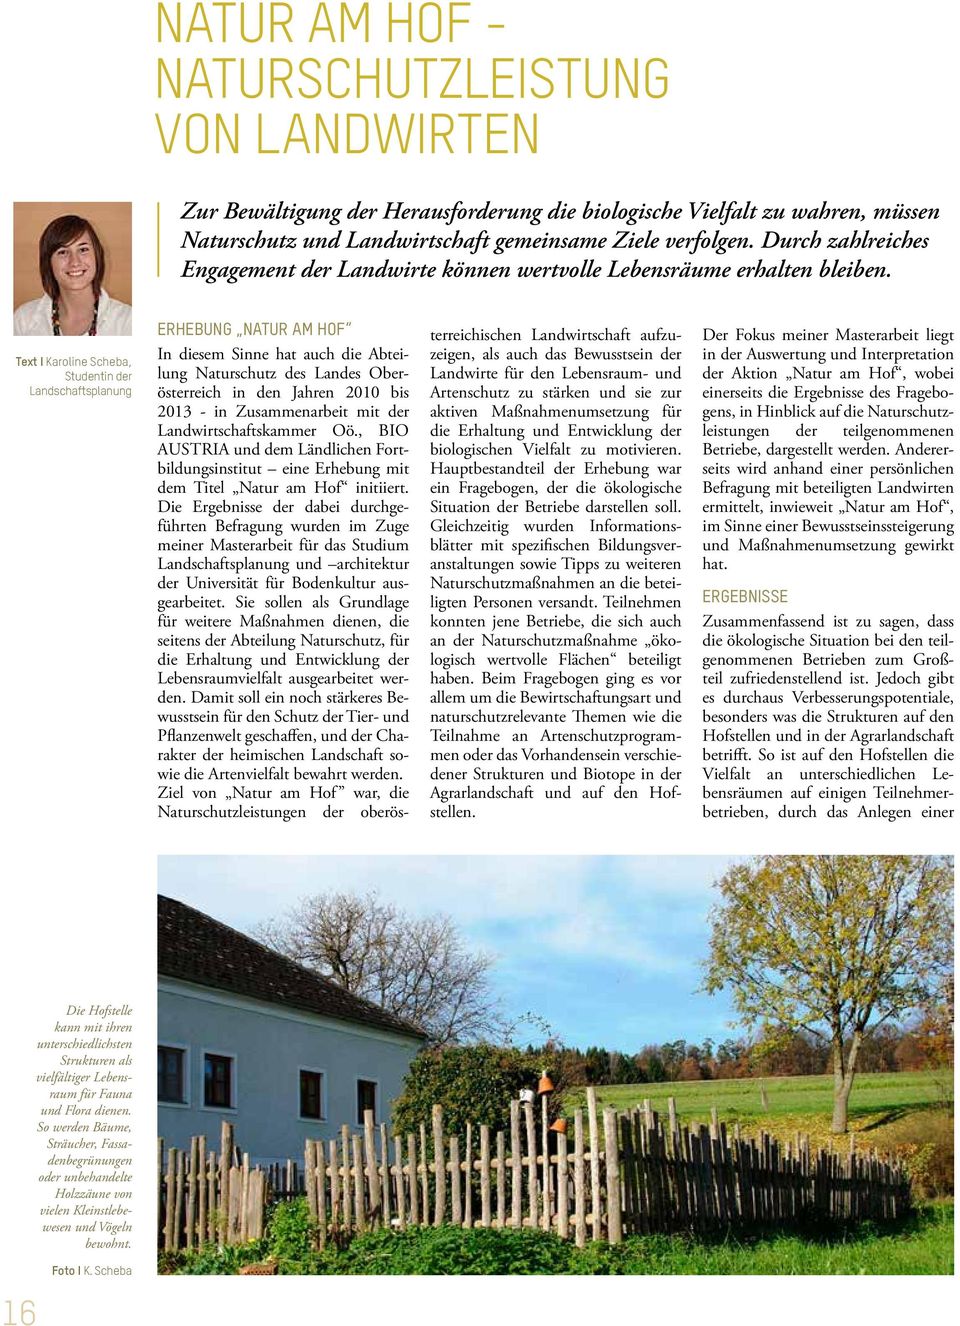 Text I Karoline Scheba, Studentin der Landschaftsplanung ERHEBUNG NATUR AM HOF In diesem Sinne hat auch die Abteilung Naturschutz des Landes Oberösterreich in den Jahren 2010 bis 2013 - in